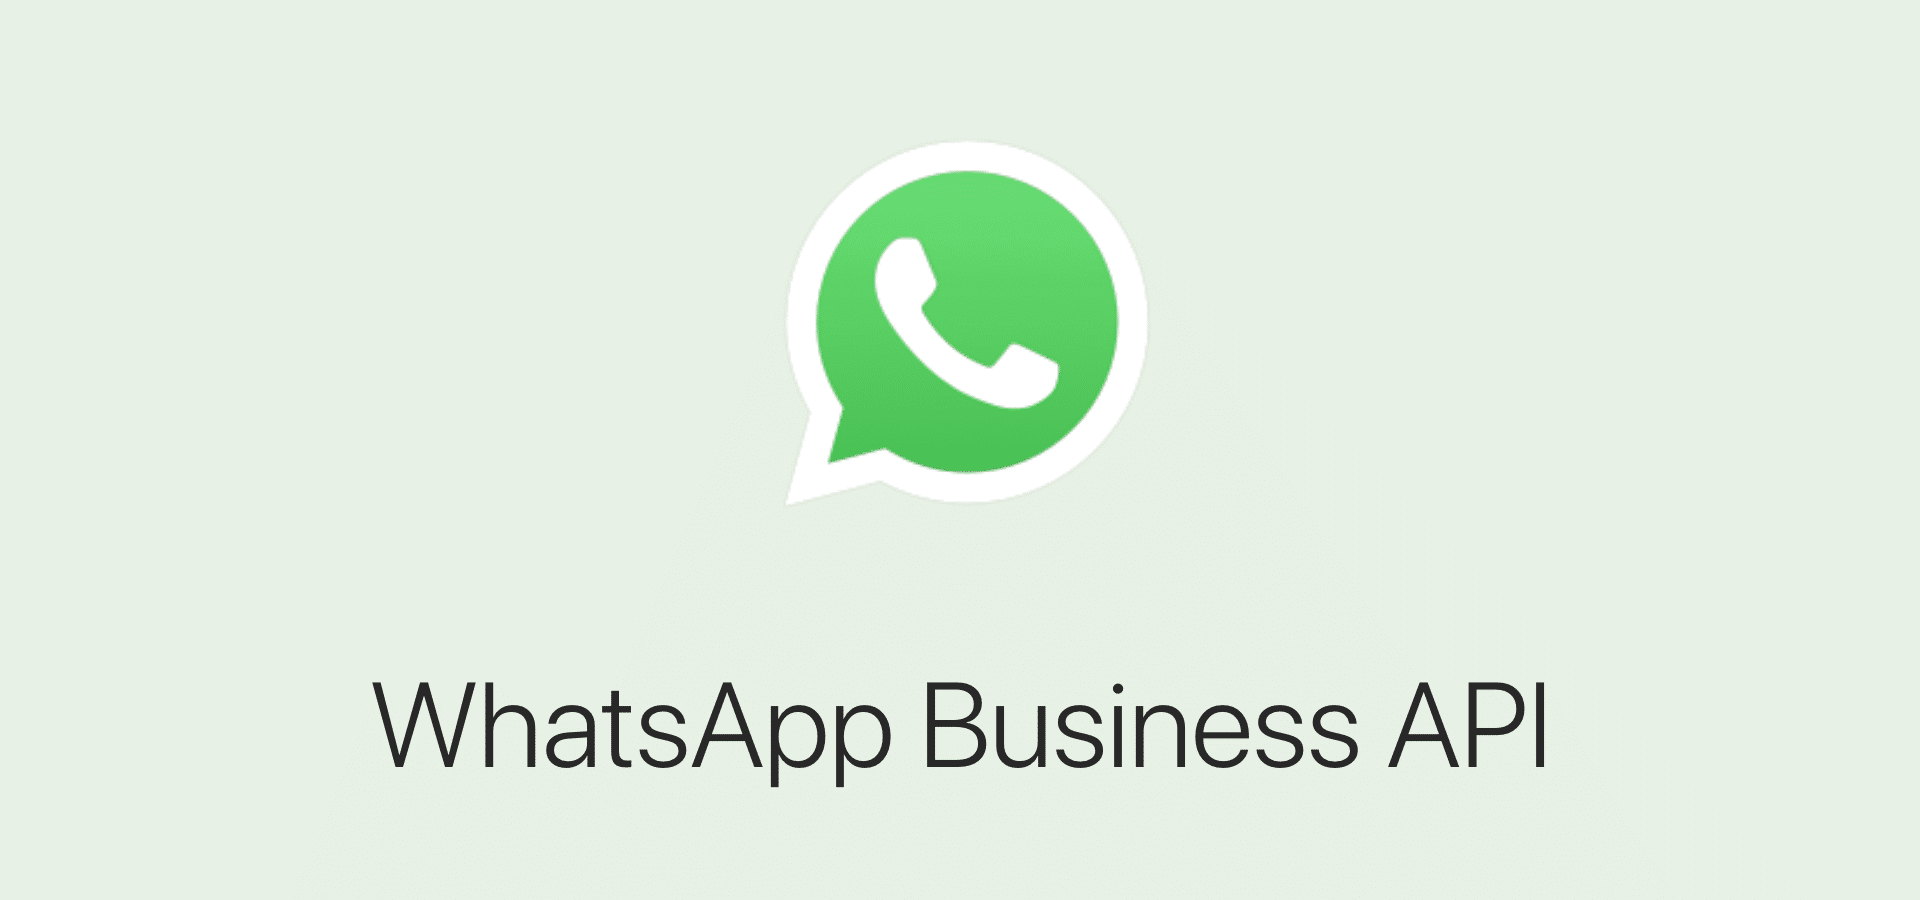 استخدام WhatsApp Business API لخدمة العملاء في الوقت الفعلي